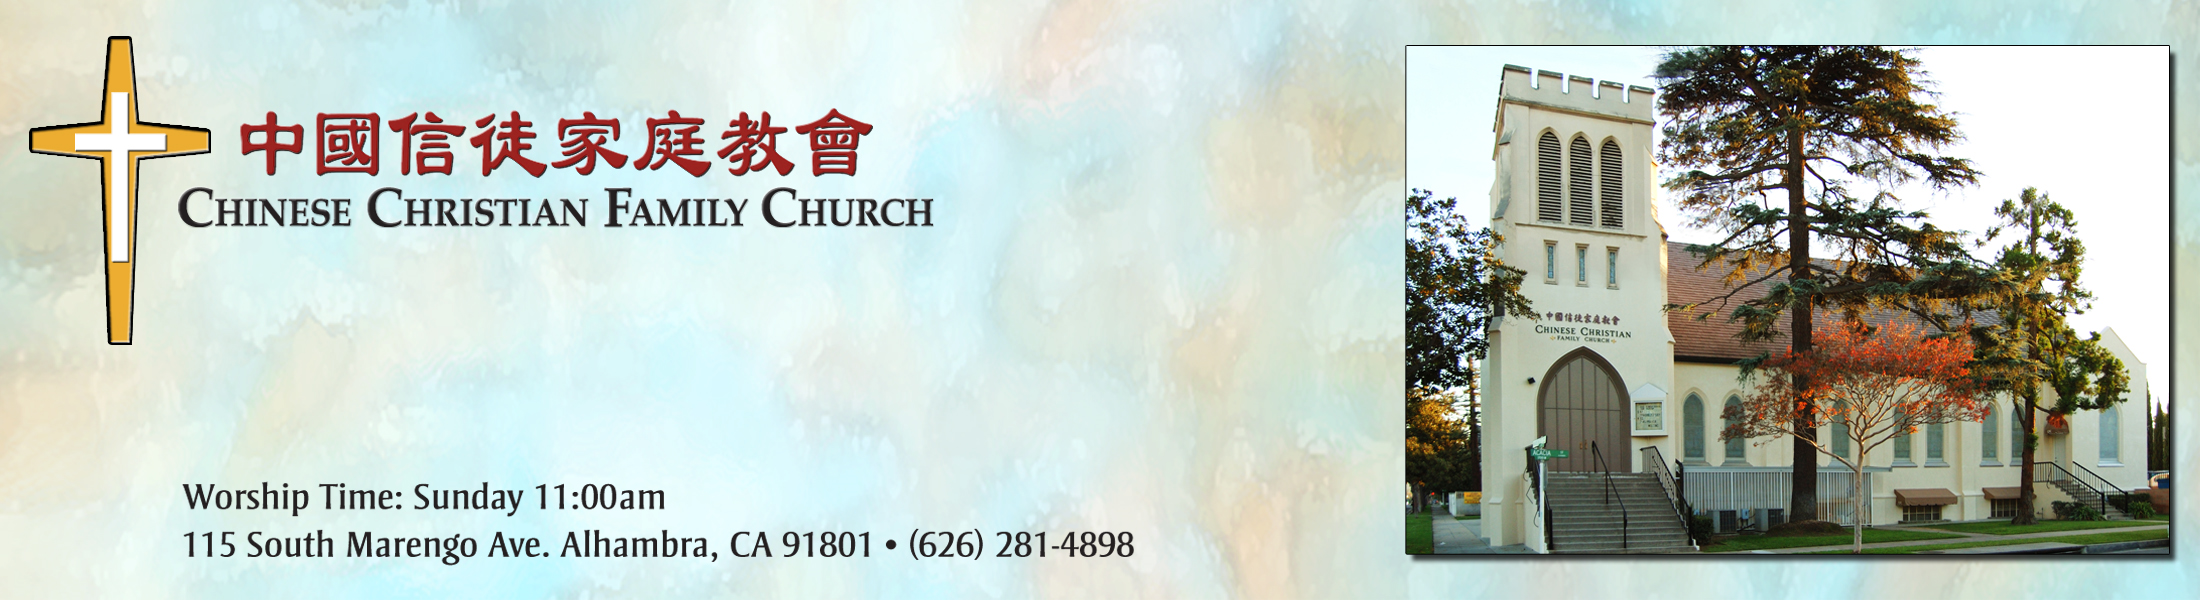 中國信徒家庭教會介紹 電話 地址 營業時間 洛杉磯最大的華人商家資訊平台